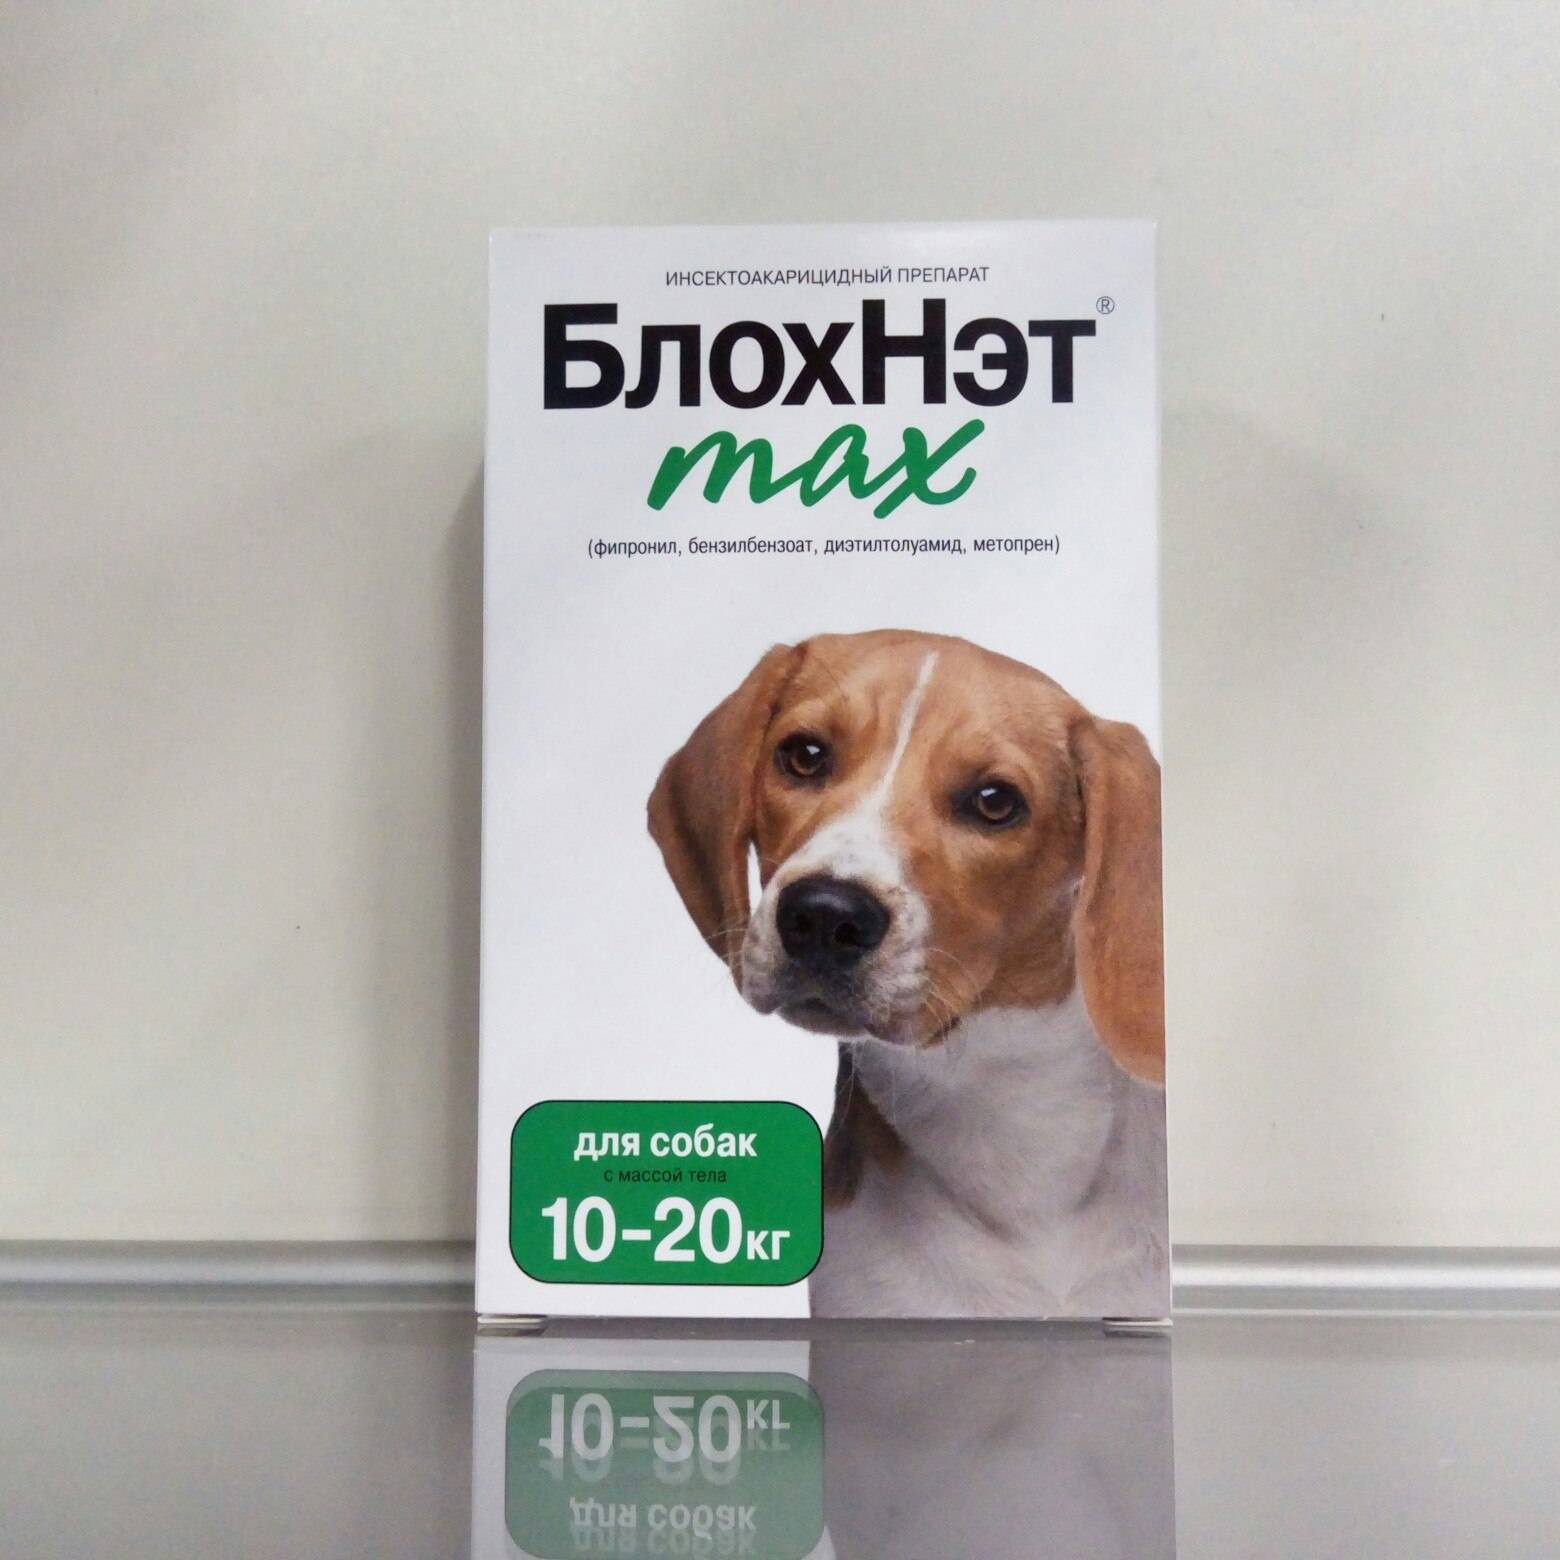 Блохнэт max для собак с массой тела до 10 кг